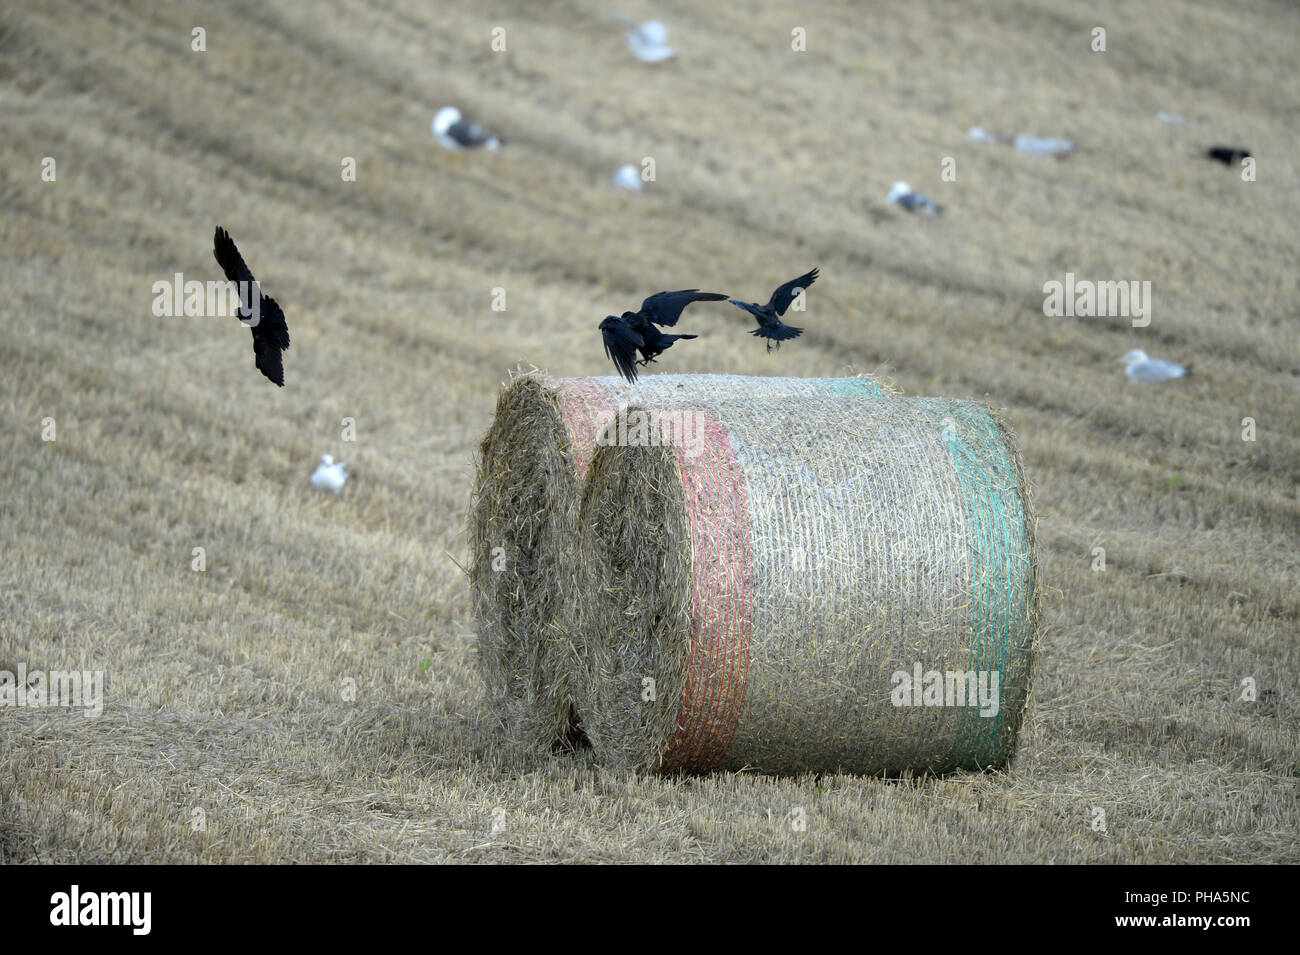 Les corbeaux voler à partir de bottes de paille dans le champ de chaumes. Goélands en arrière-plan Banque D'Images